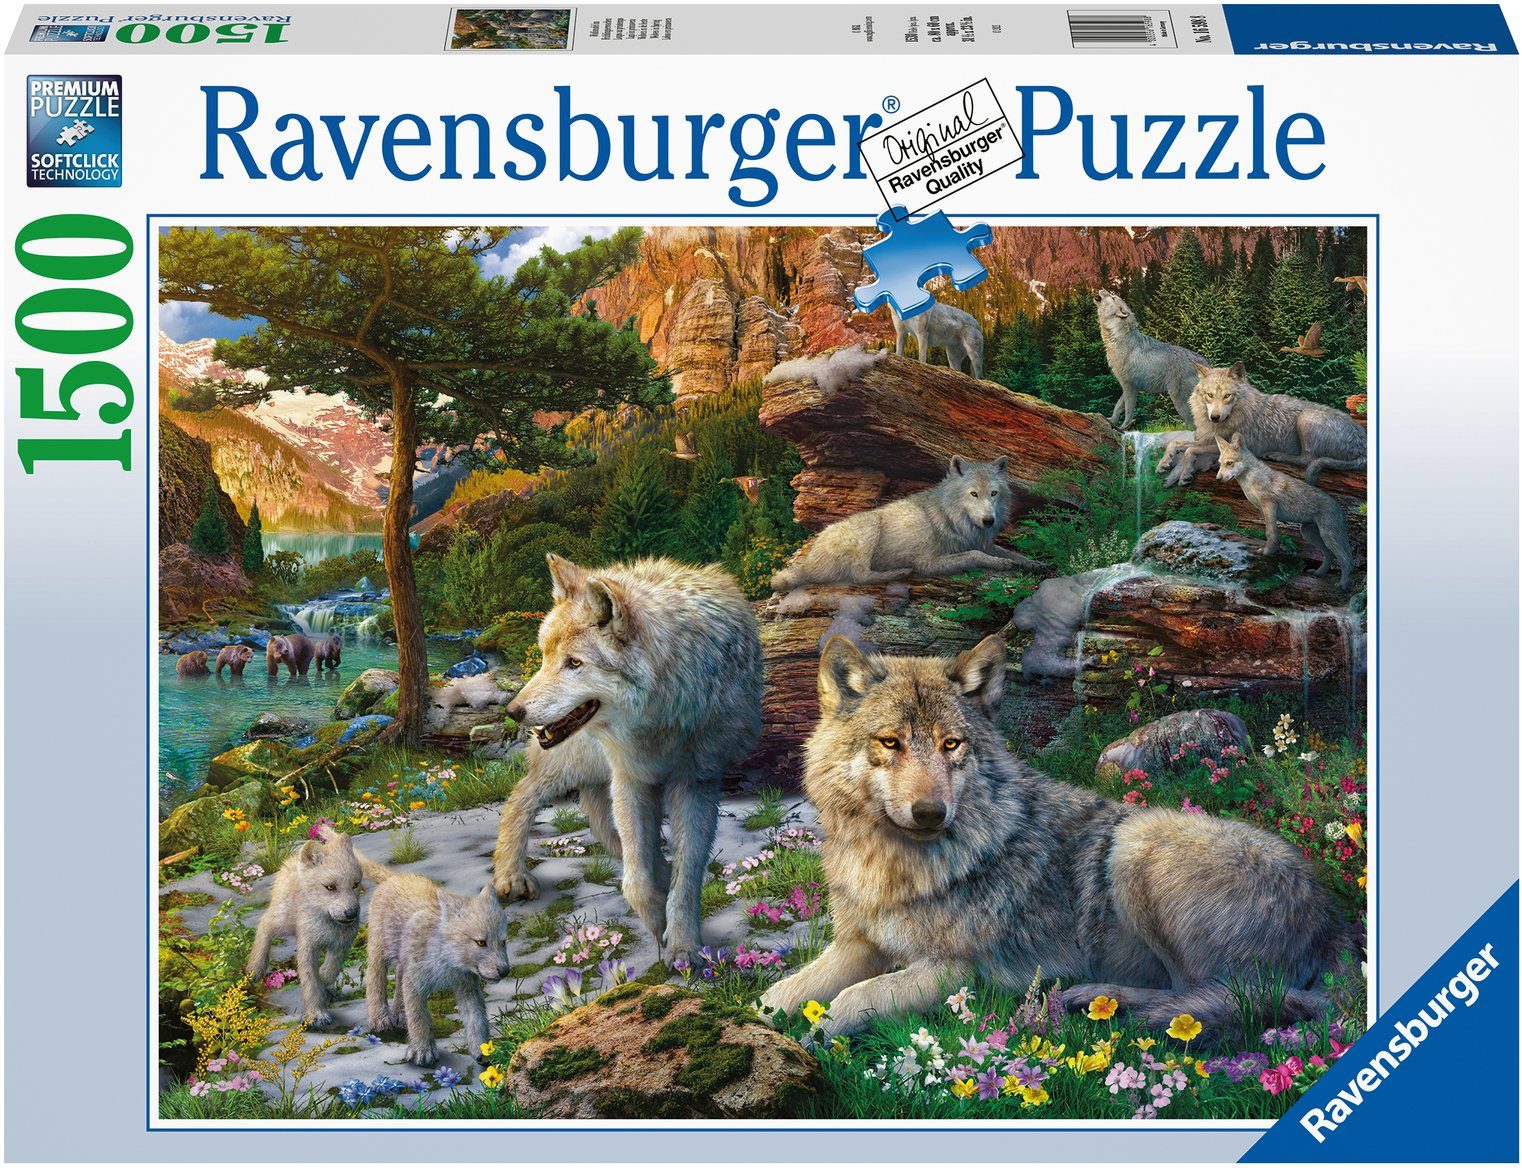 Ravensburger Puzzle Wolfsrudel im Frühlingserwachen, 1500 Puzzleteile, Made in Germany, FSC® - schützt Wald - weltweit